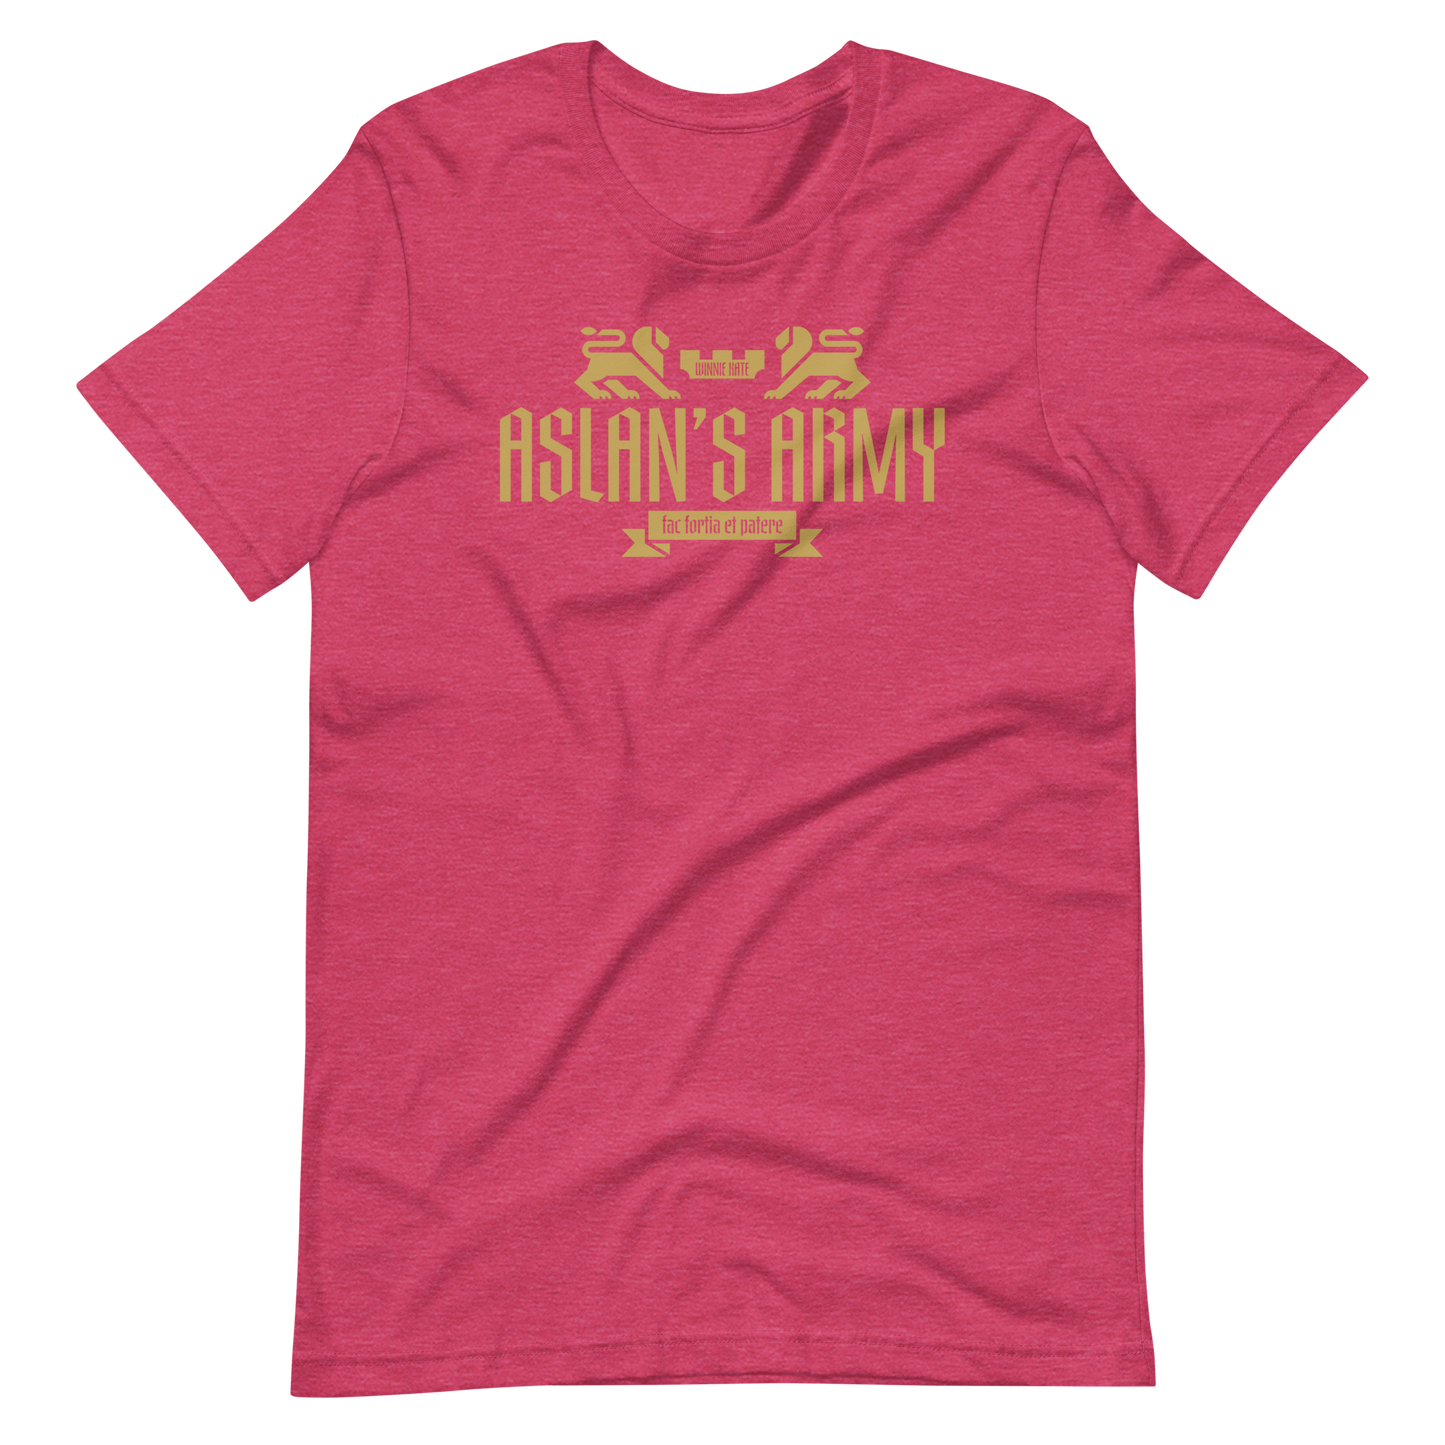 Aslan's Army T-Shirt